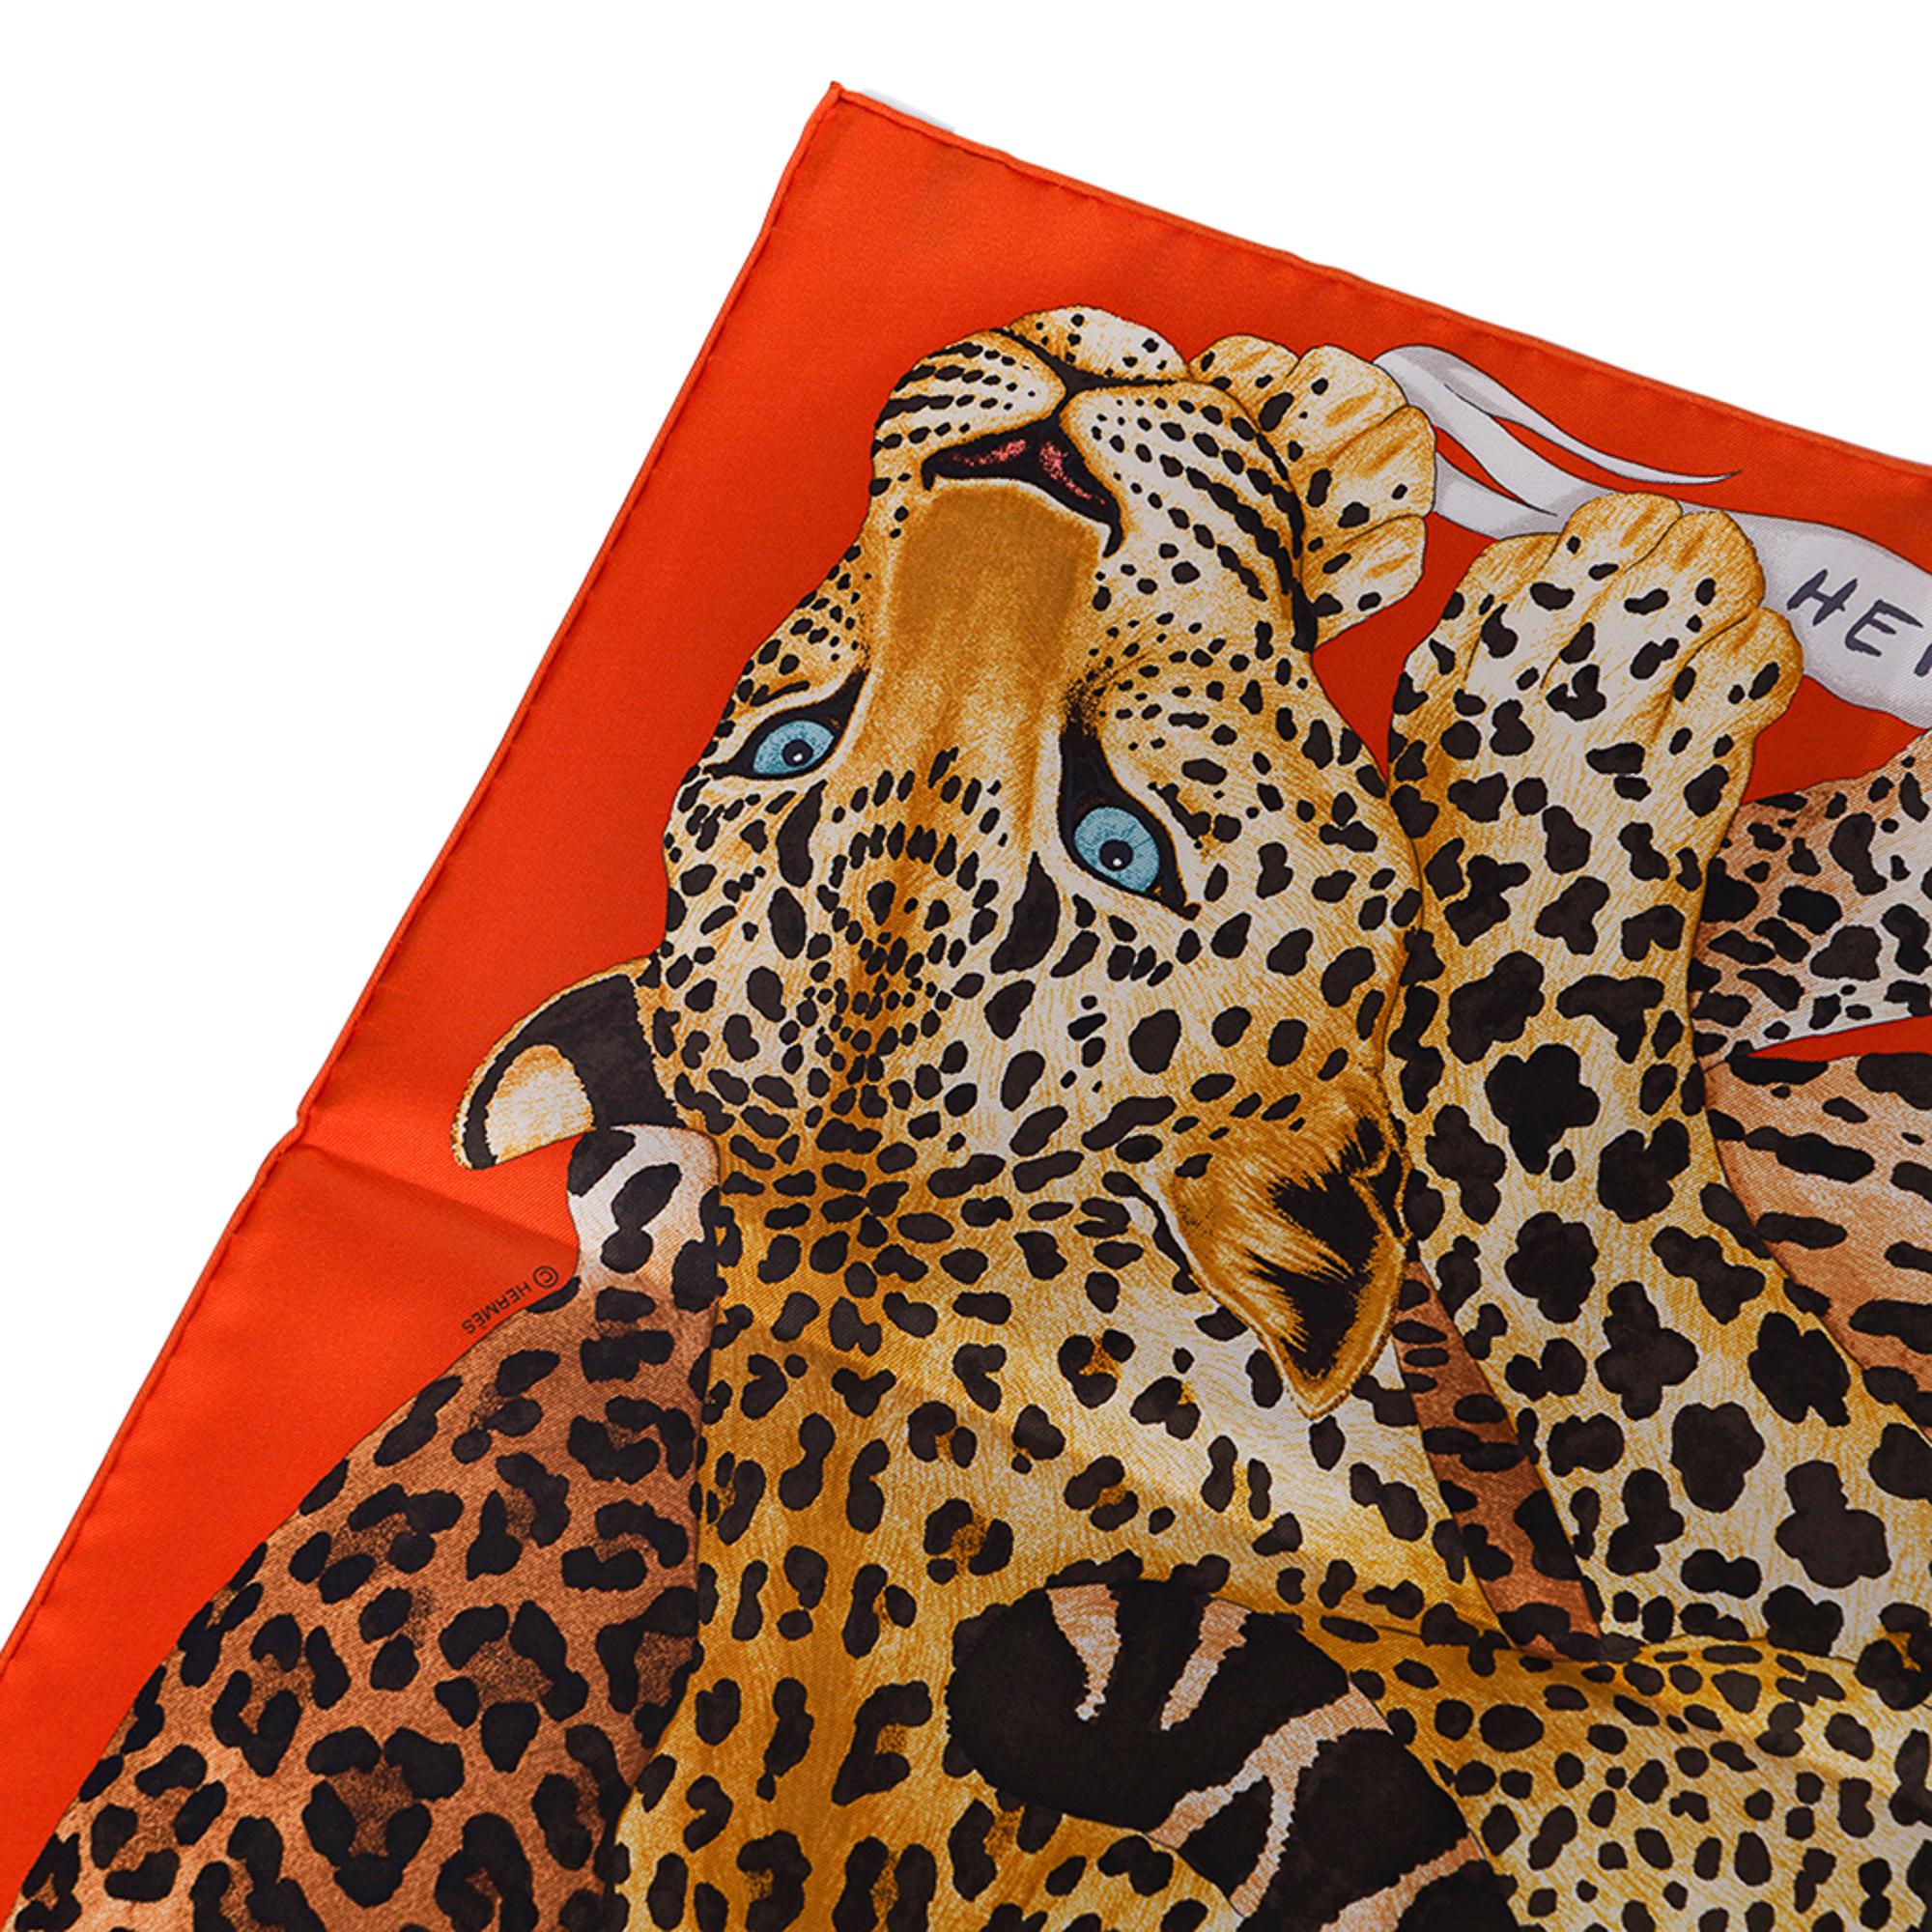 Mightychic bietet einen Hermes Lazy Leopardesses Seidenschal in den Farben Potiron, Brun und Miel an.
Dieser exquisite Hermes-Schal stellt die anmutige Majestät von Katzen in Ruhe dar.
Entworfen von Arlette Ess.
Signatur: handgerollter Rand.
Kommt